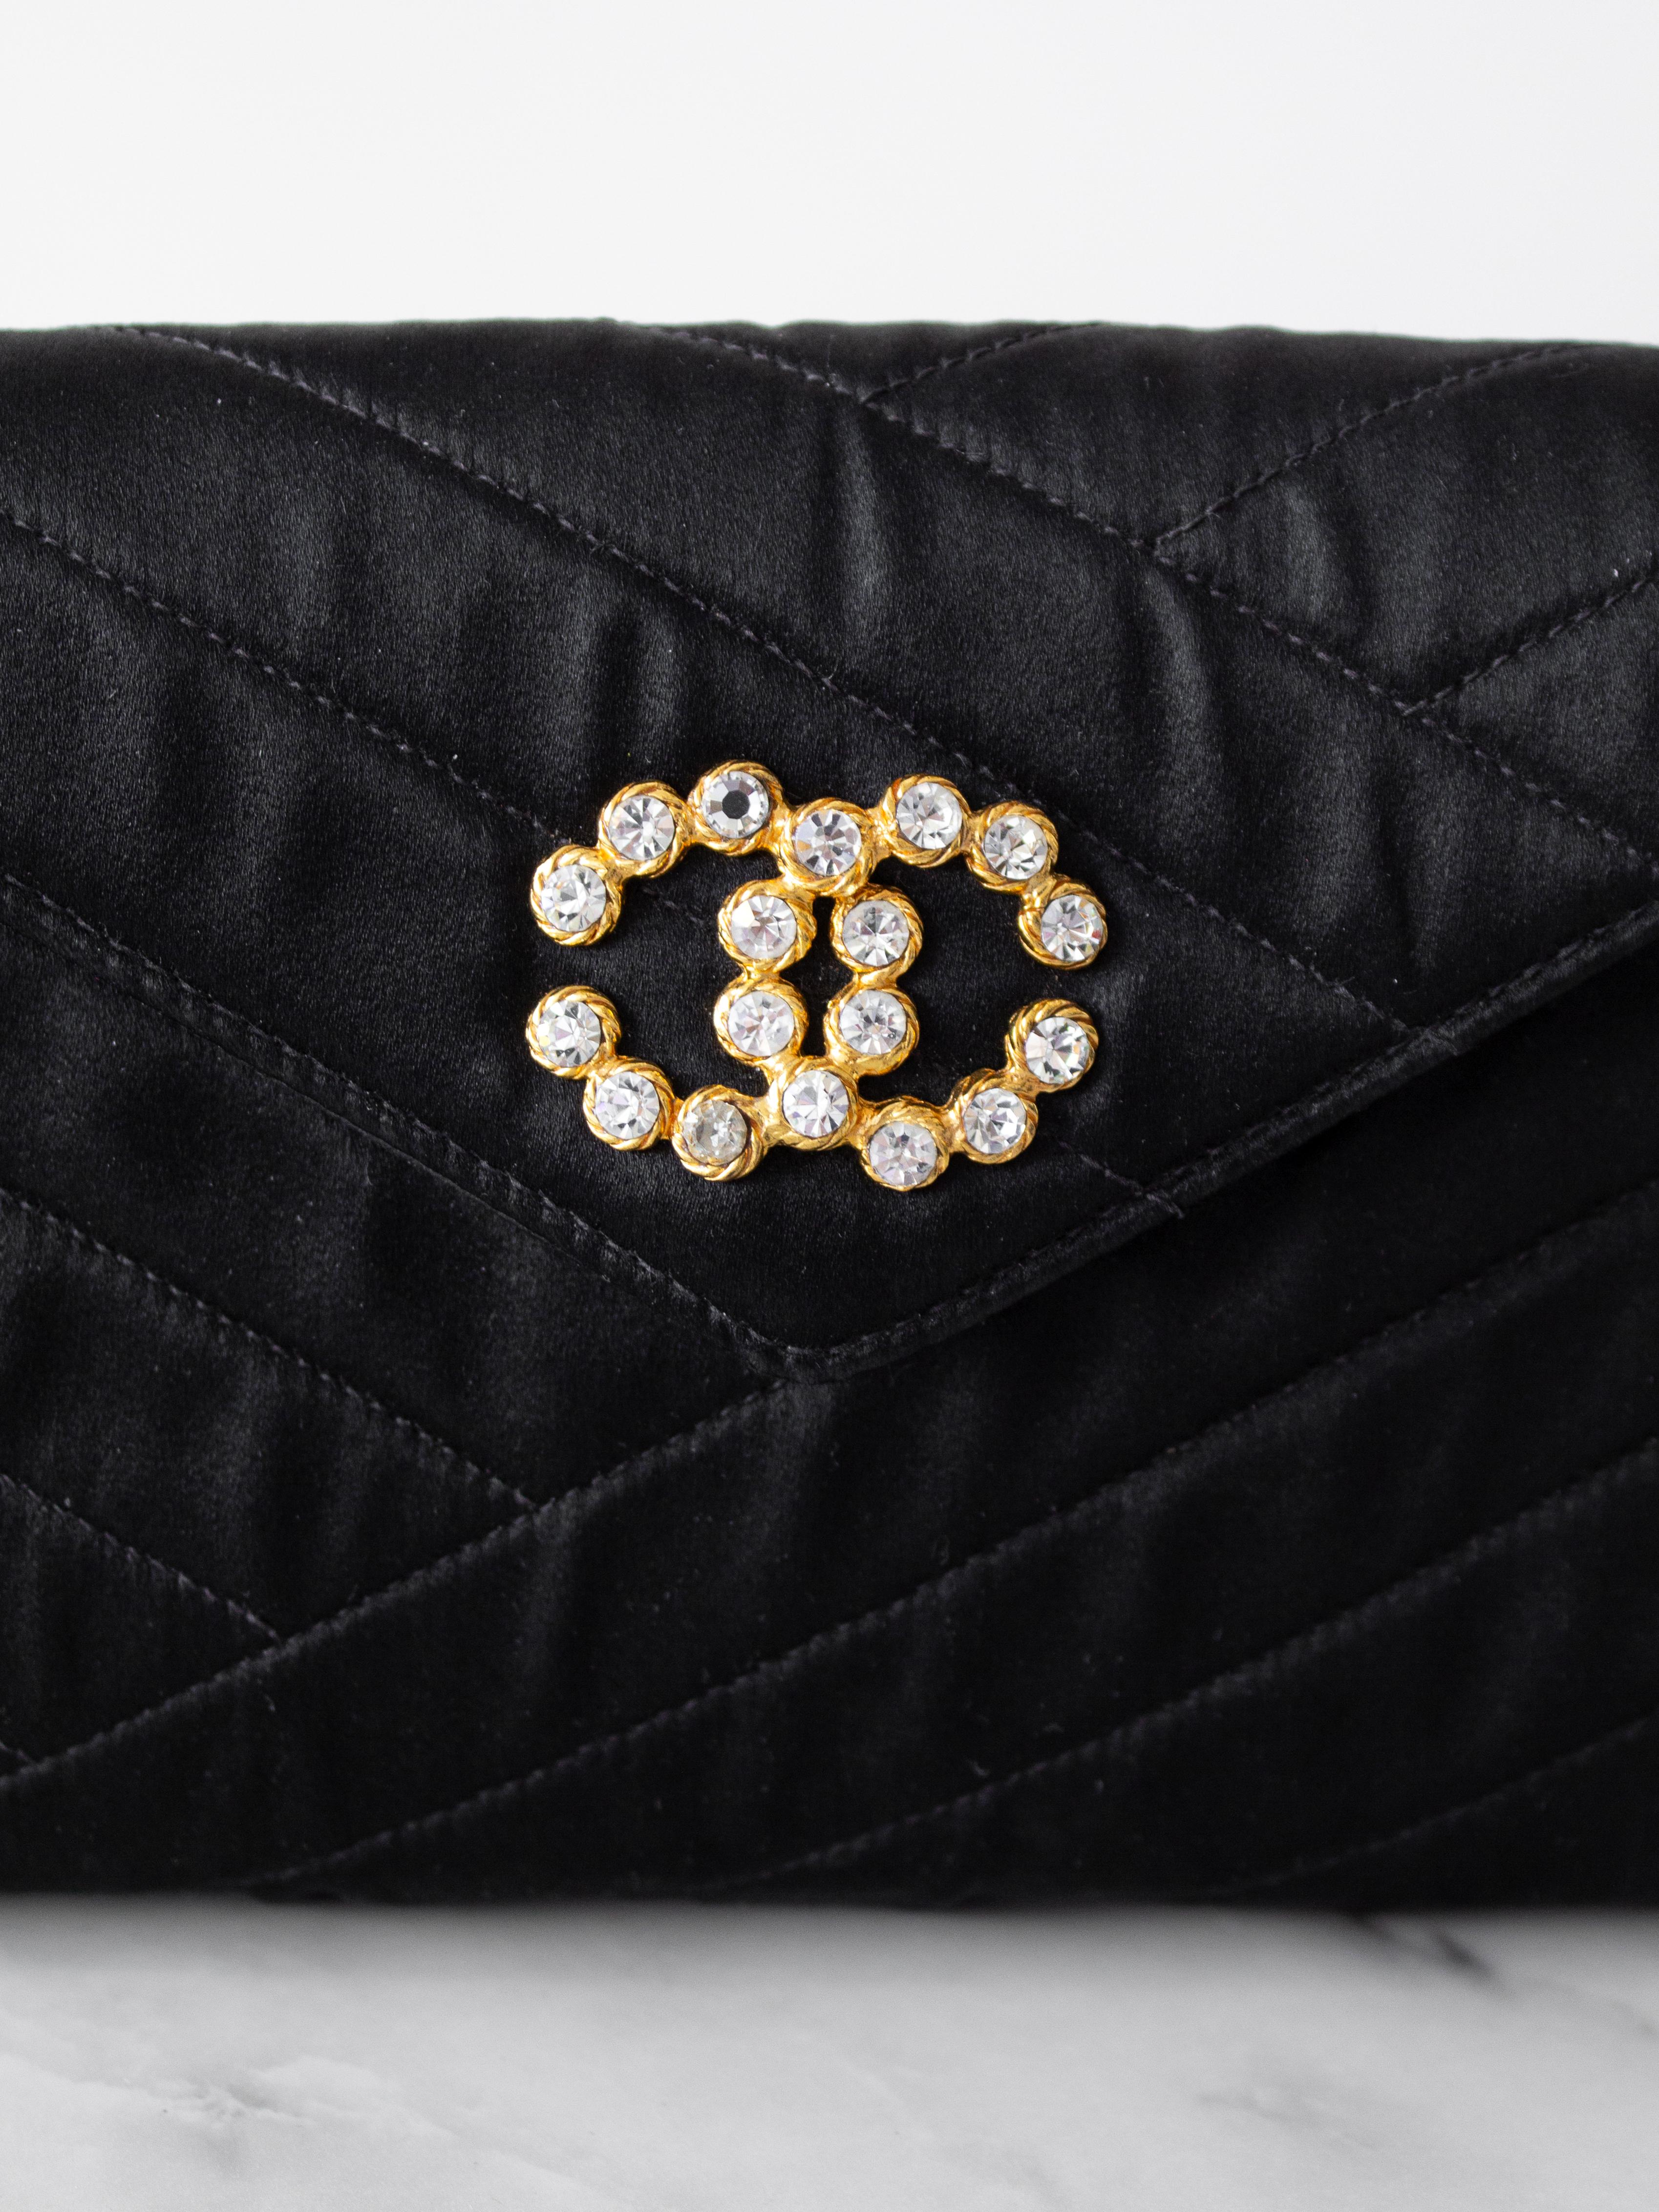 Voici le petit sac de soirée noir de Chanel, une pièce intemporelle datant de 1992. Ce mini sac à rabat est doté d'une bandoulière en maillons de chaîne dorés et est méticuleusement confectionné en satin noir avec un matelassage au point de bias.